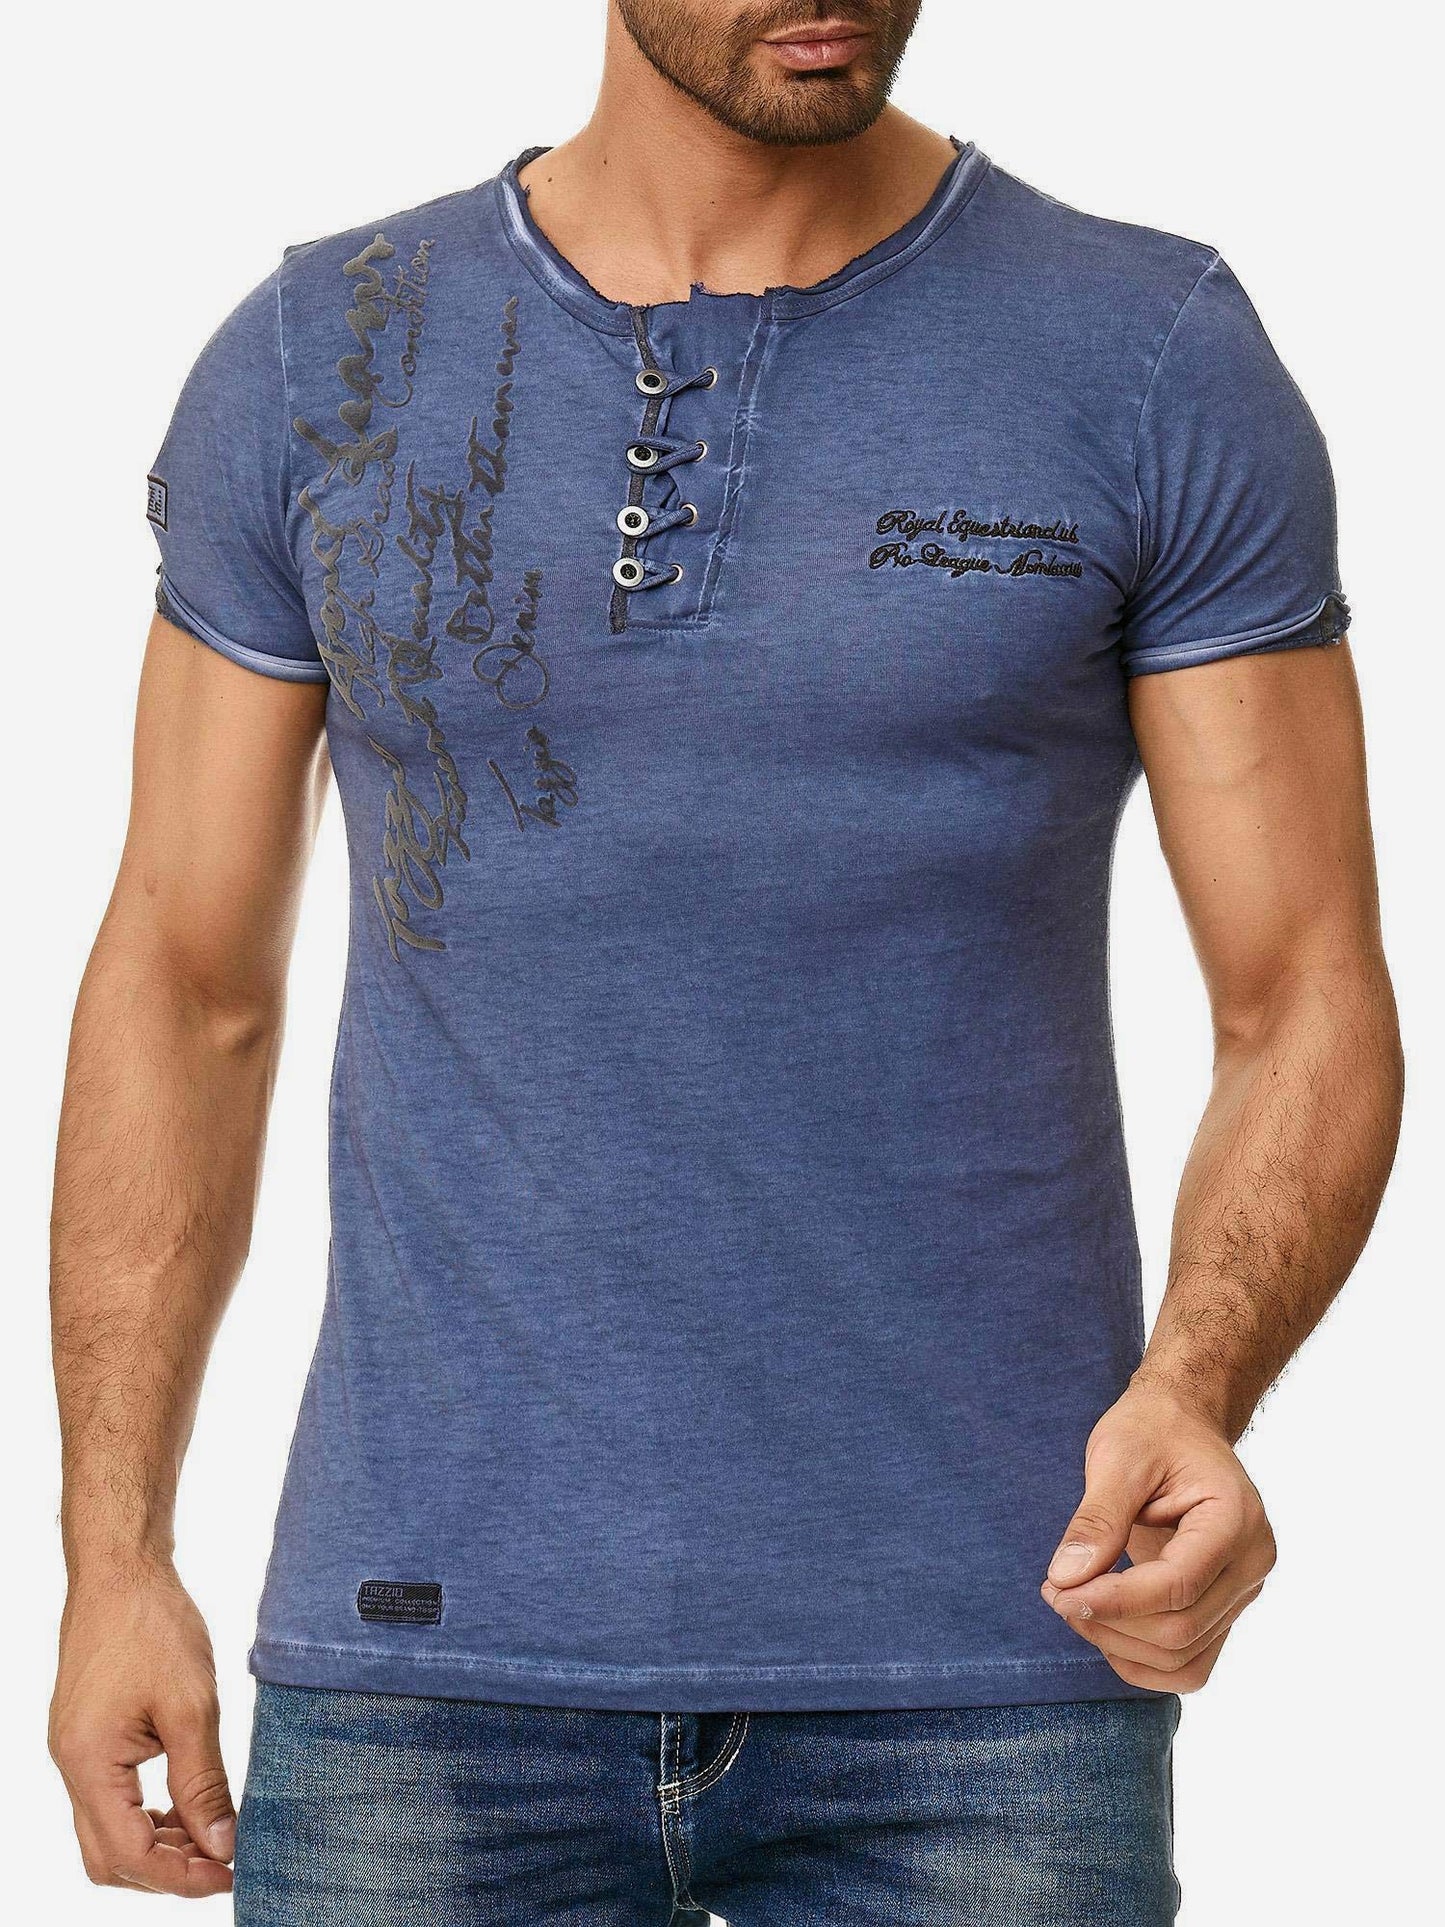 Tazzio Herren T-Shirt Ölwaschung 4050-1